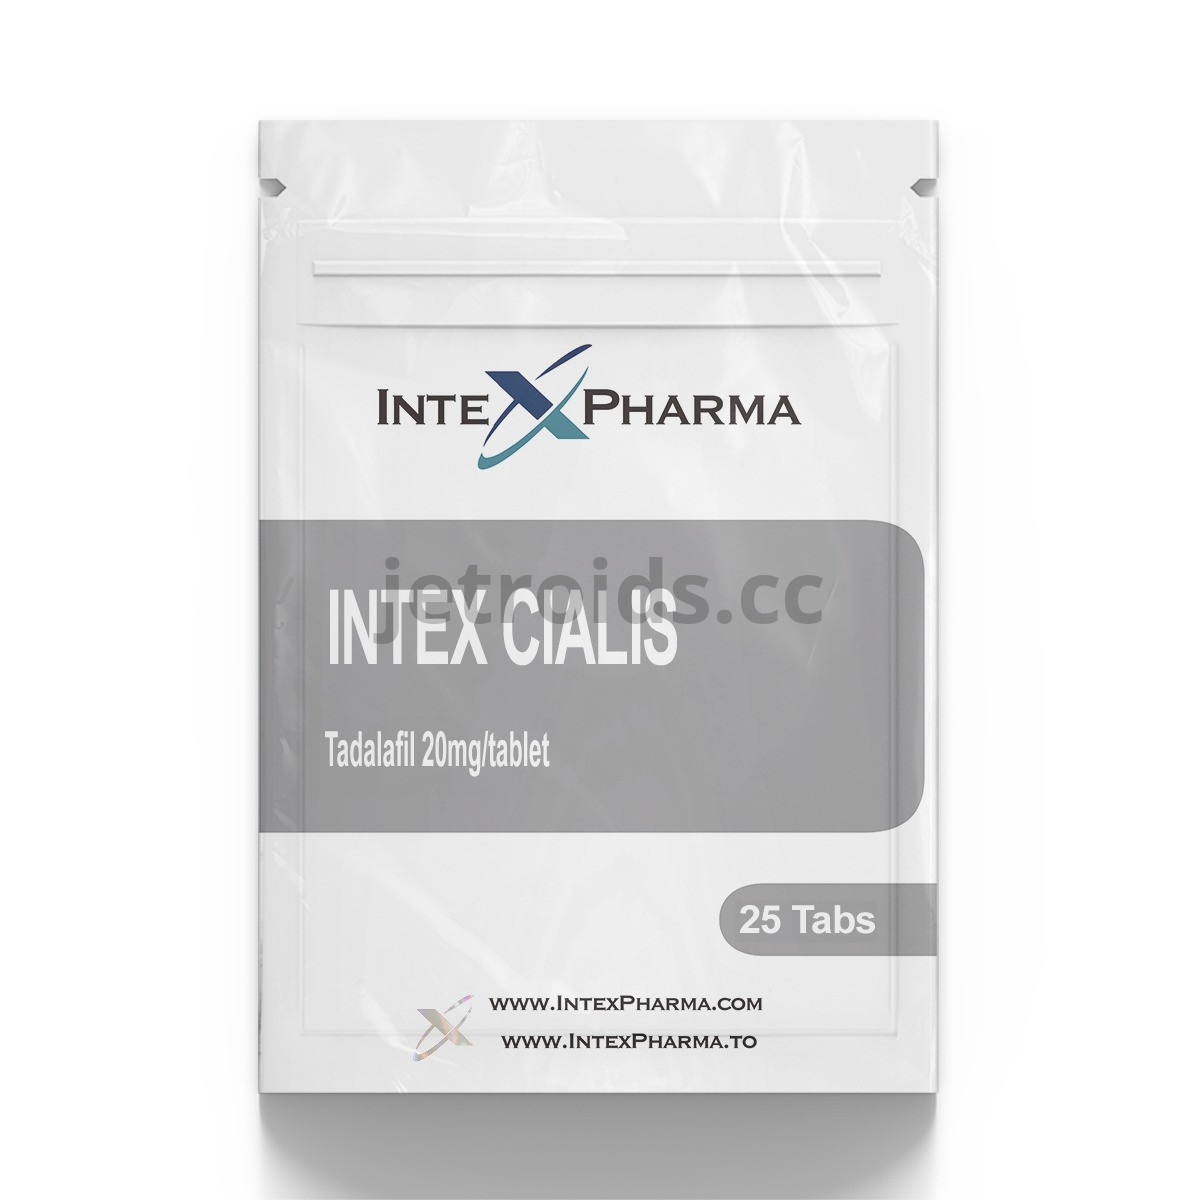 IntexPharma Intex Cialis Product Info